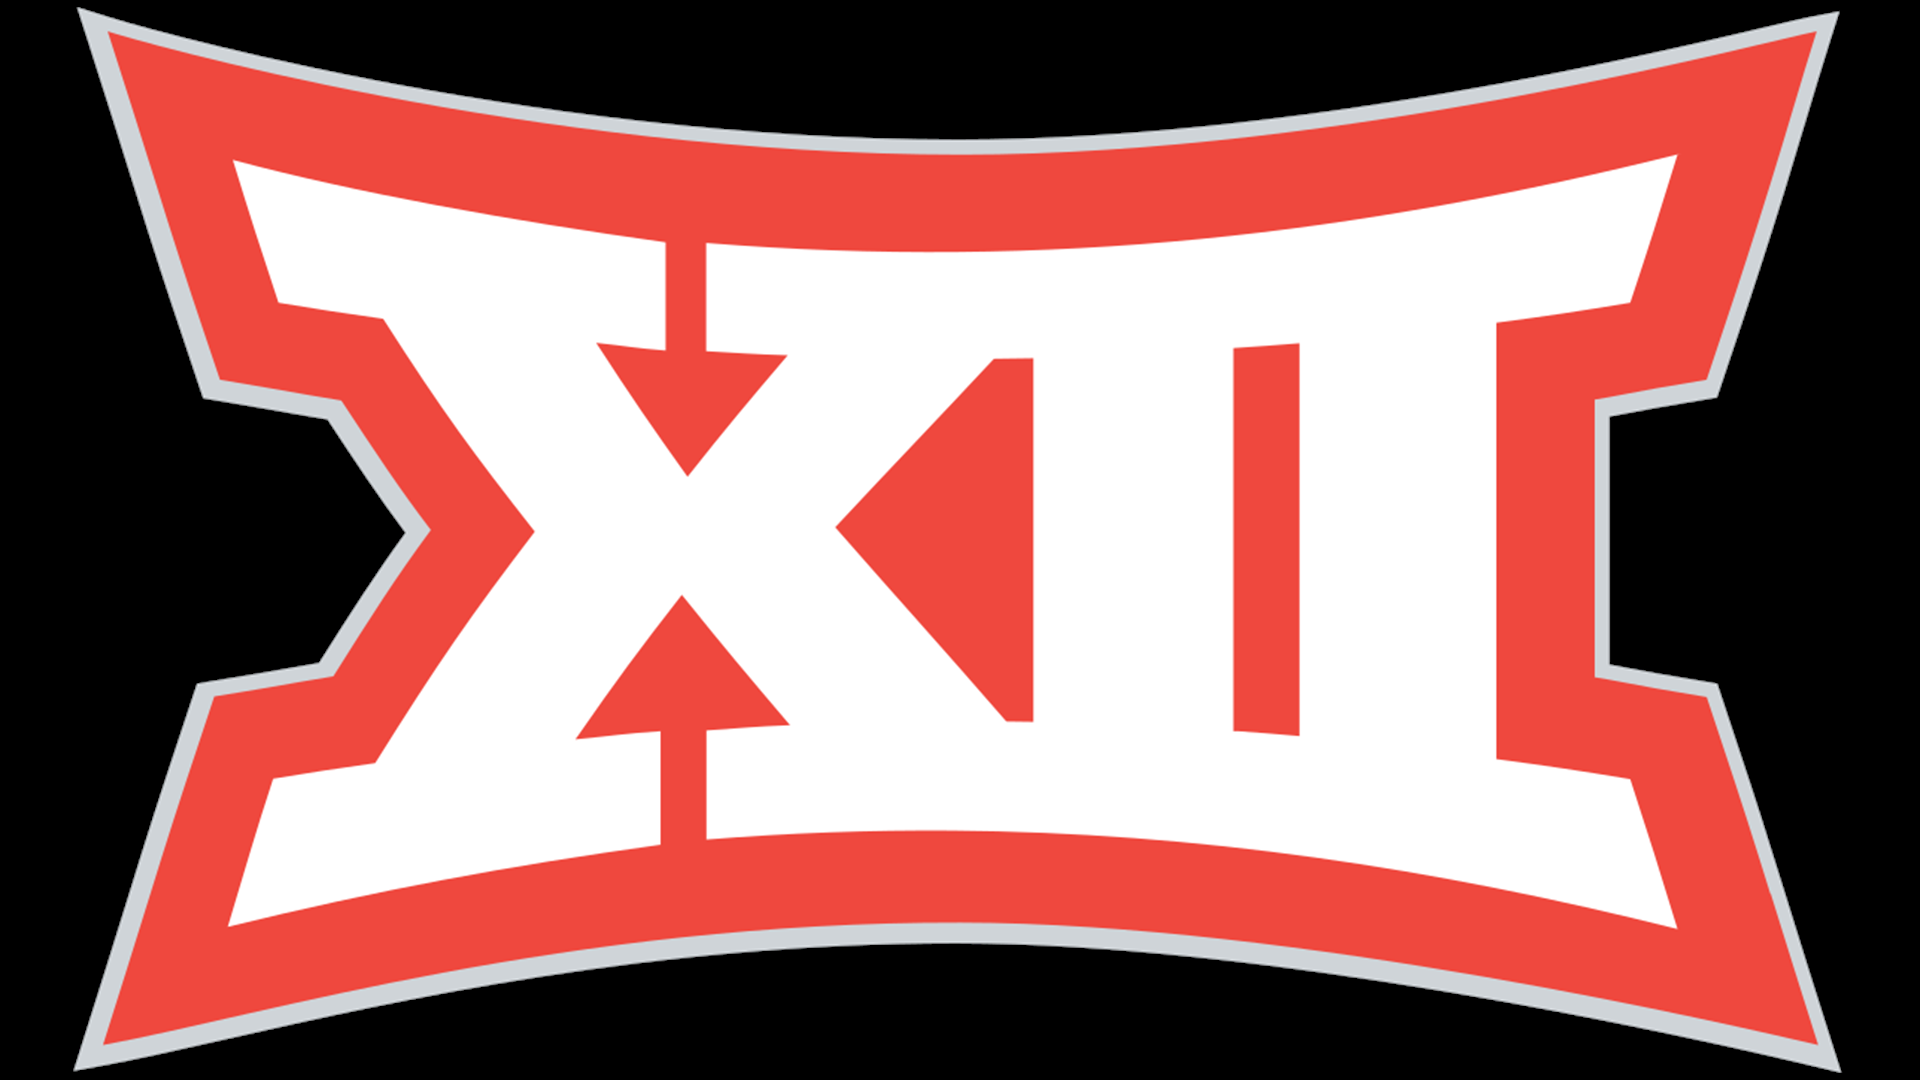 12 Лого. M12 logo. 12бзбк. 12storeezlogo. 12